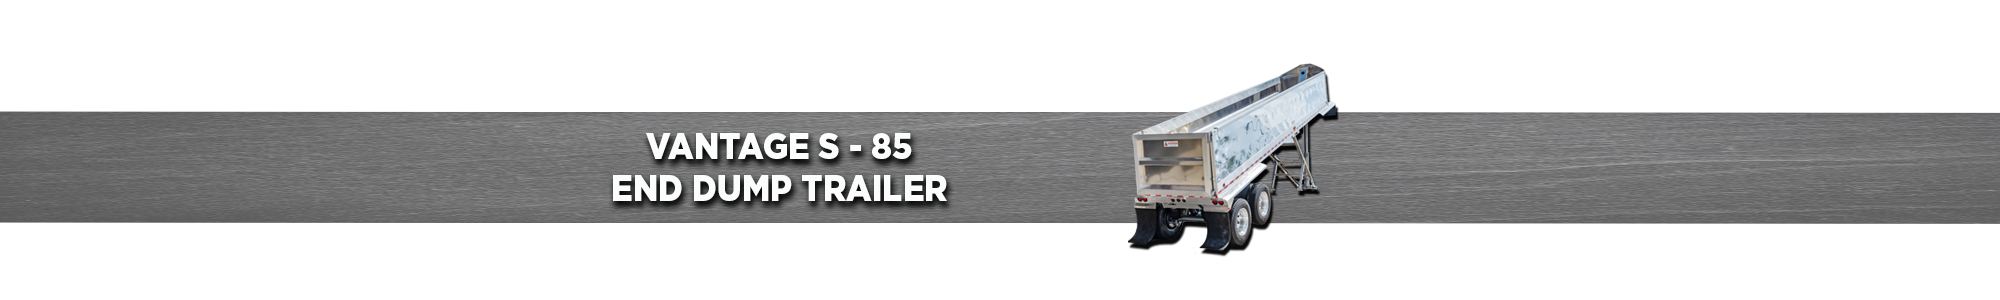 VANTAGE S-85 End Dump Trailer